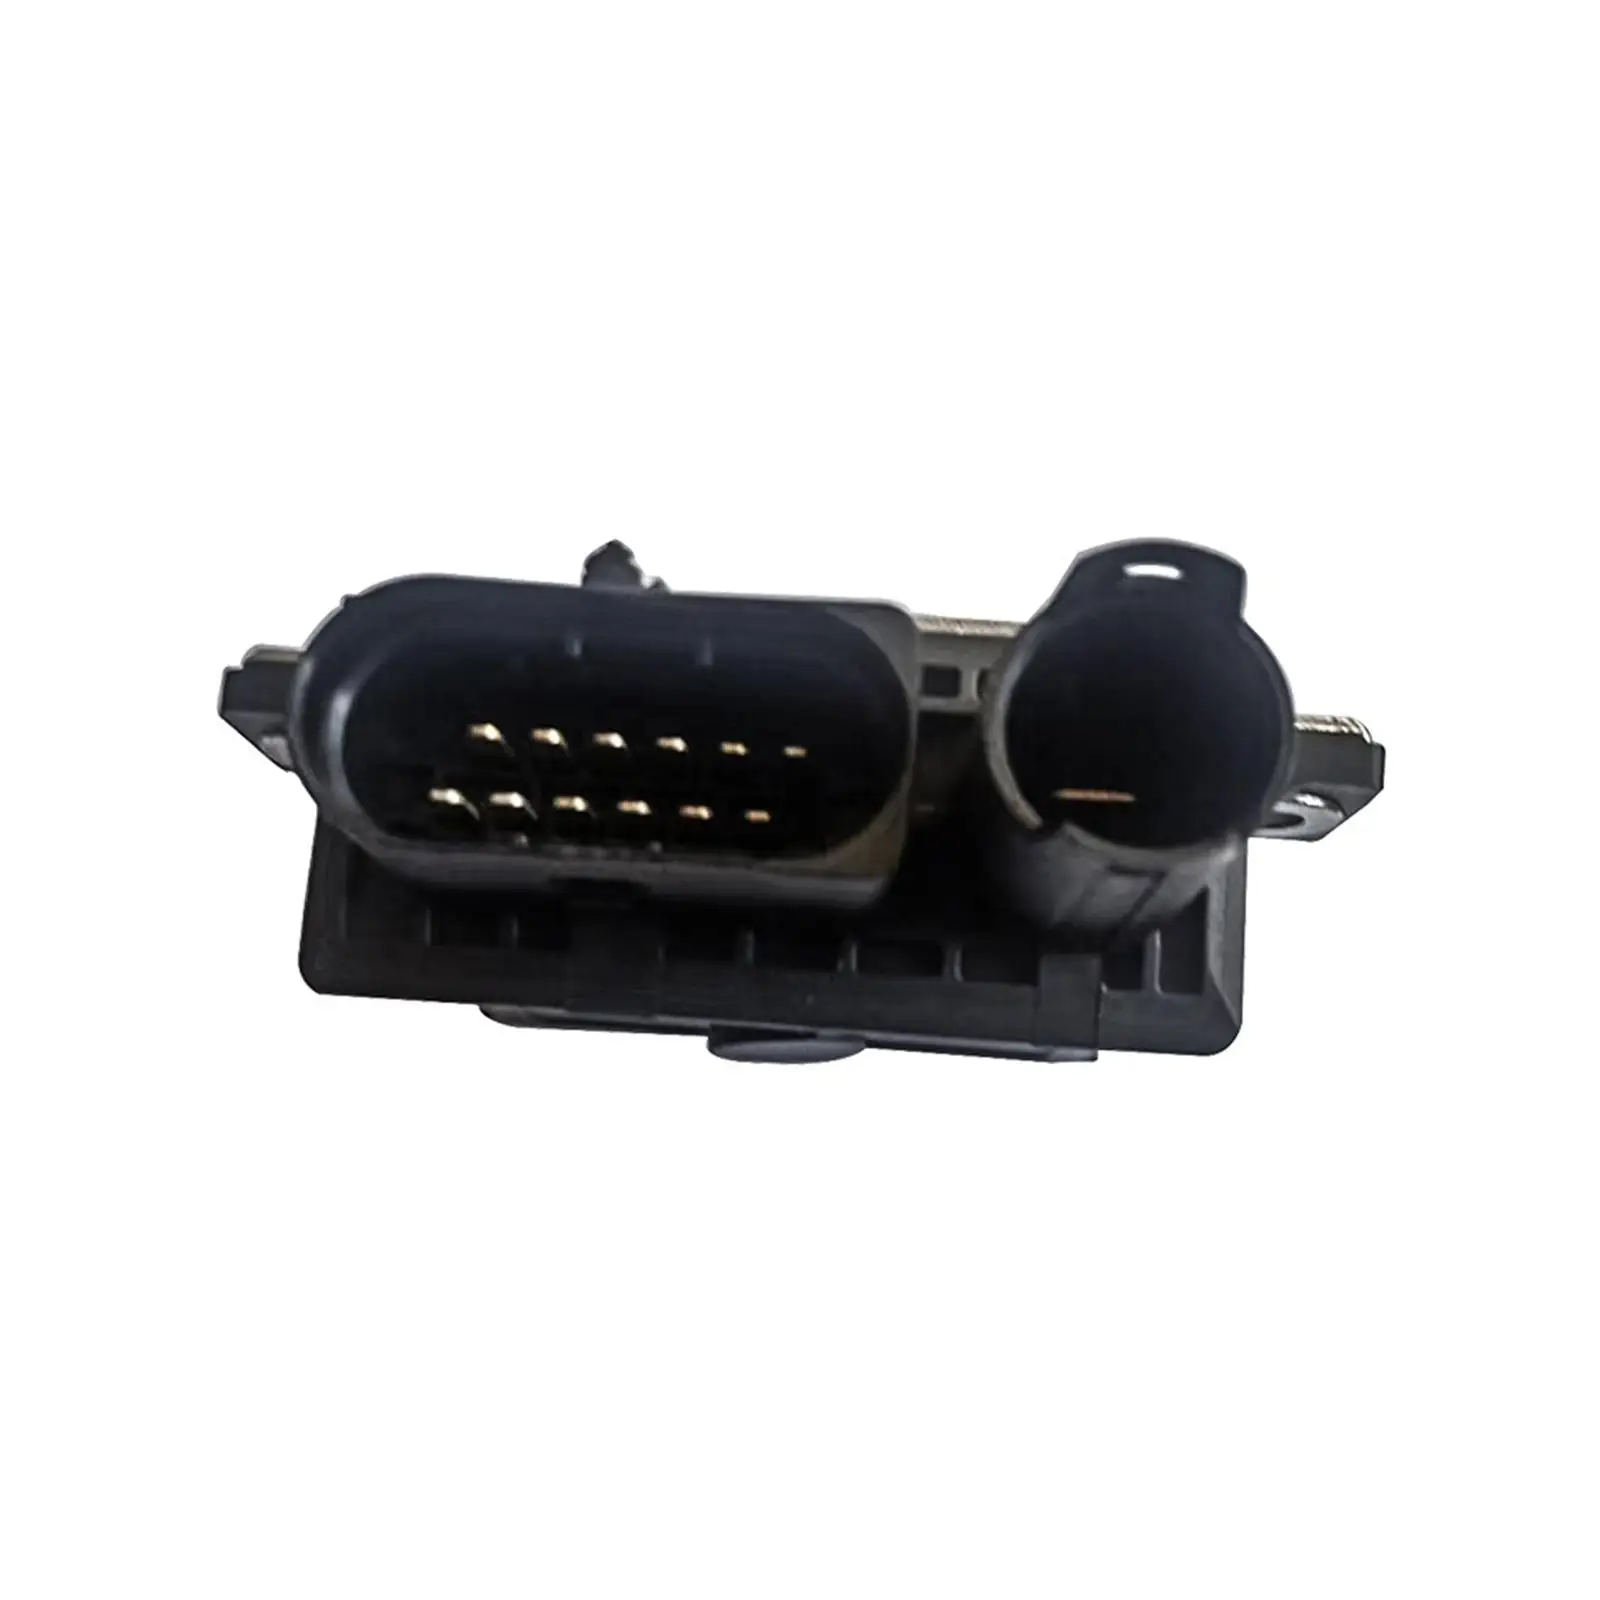 Glow Plug Control Unit Relay Module Parts for BMW 330D E46 x3 3.0D E83 images - 6